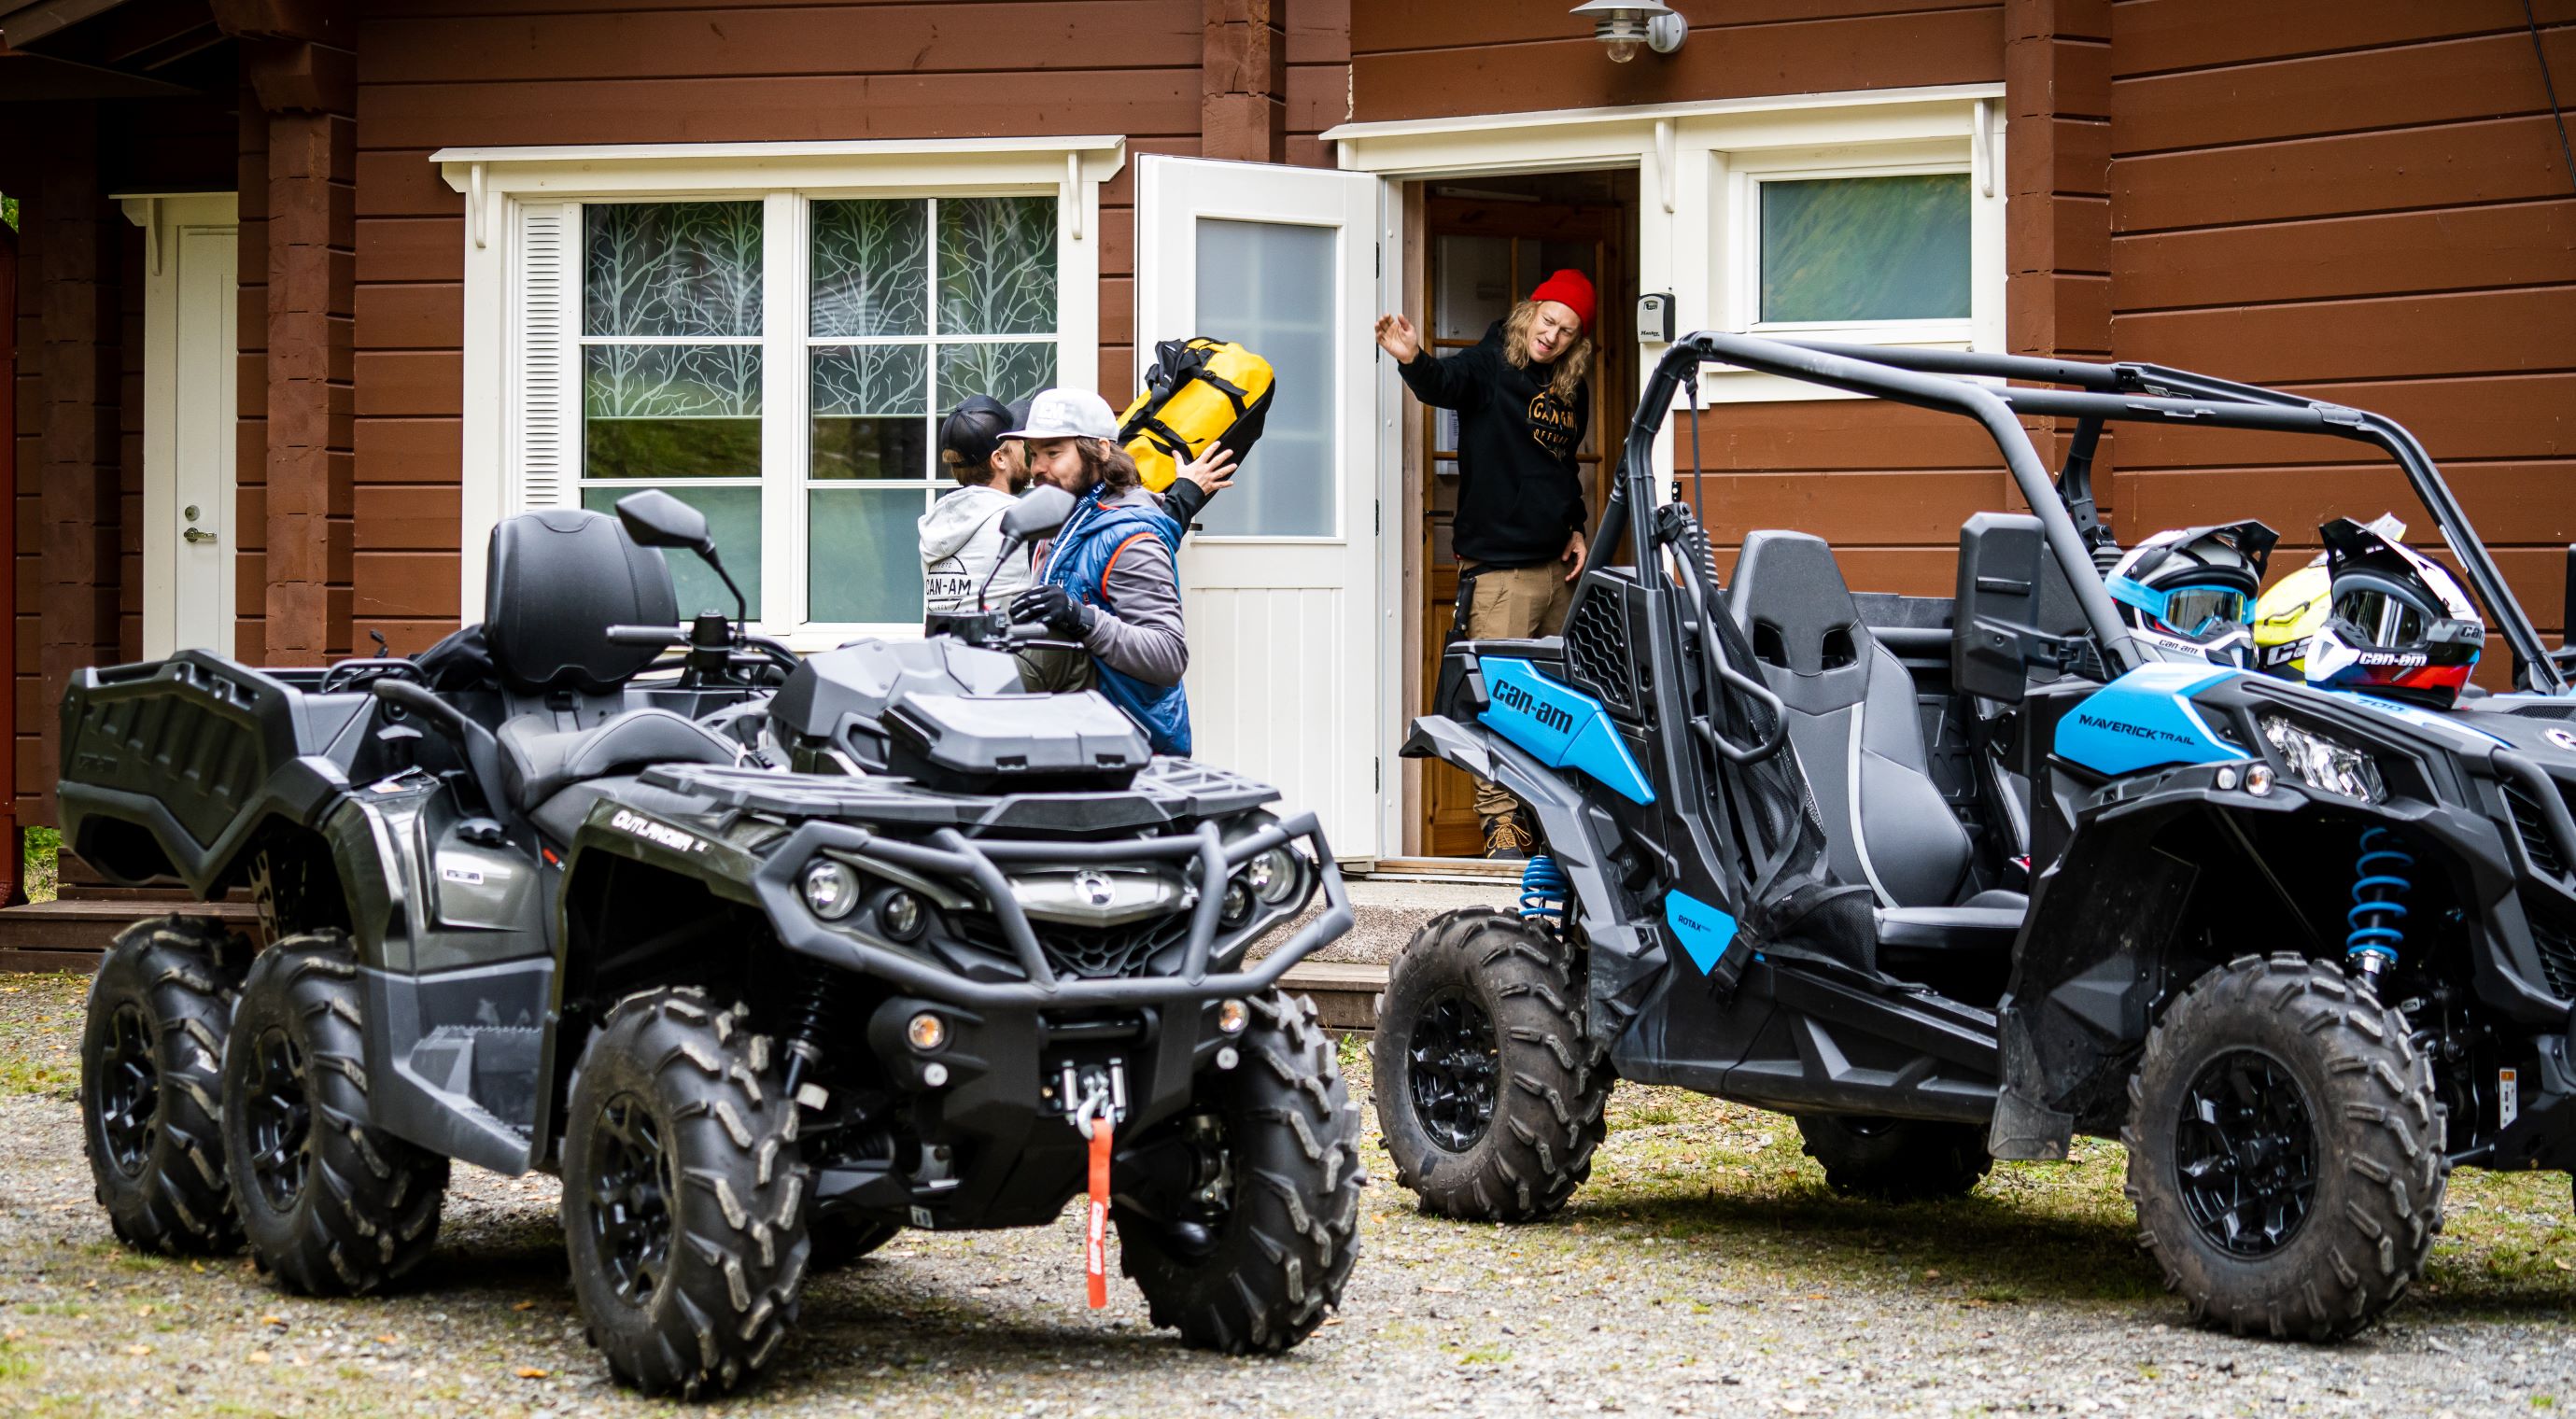 Männer bereiten sich auf eine Fahrt mit Can-Am ATV- und SSV-Fahrzeugen vor